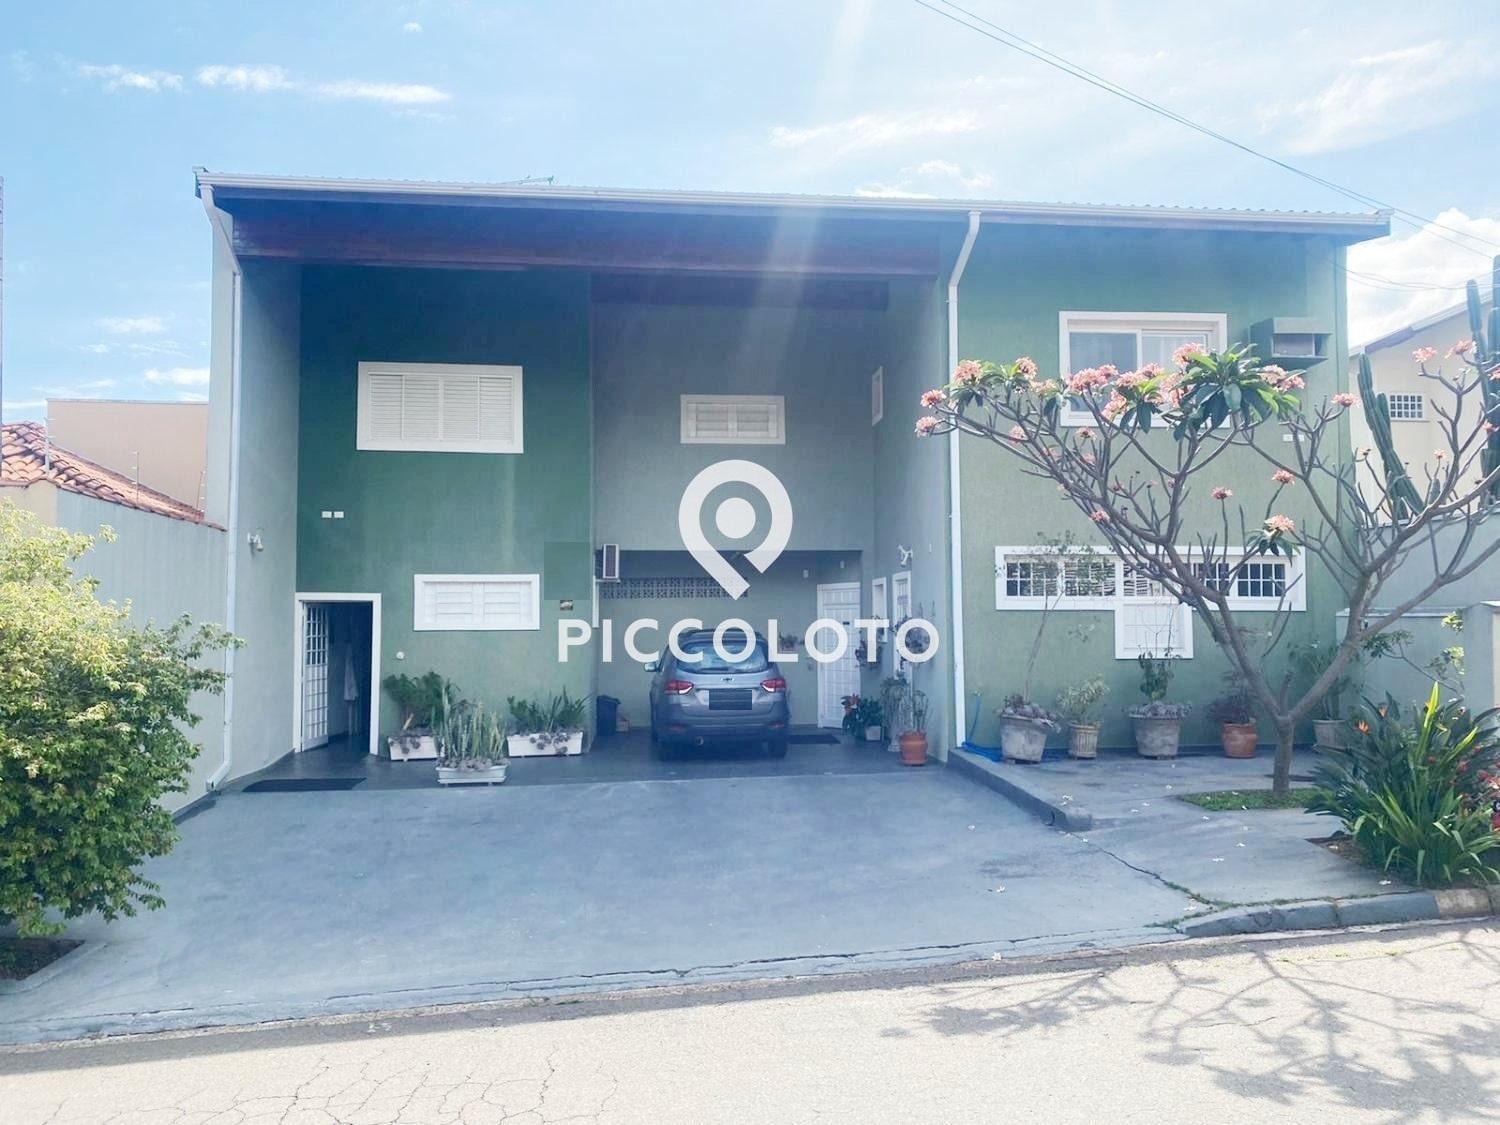 Piccoloto -Casa à venda no Parque das Universidades em Campinas